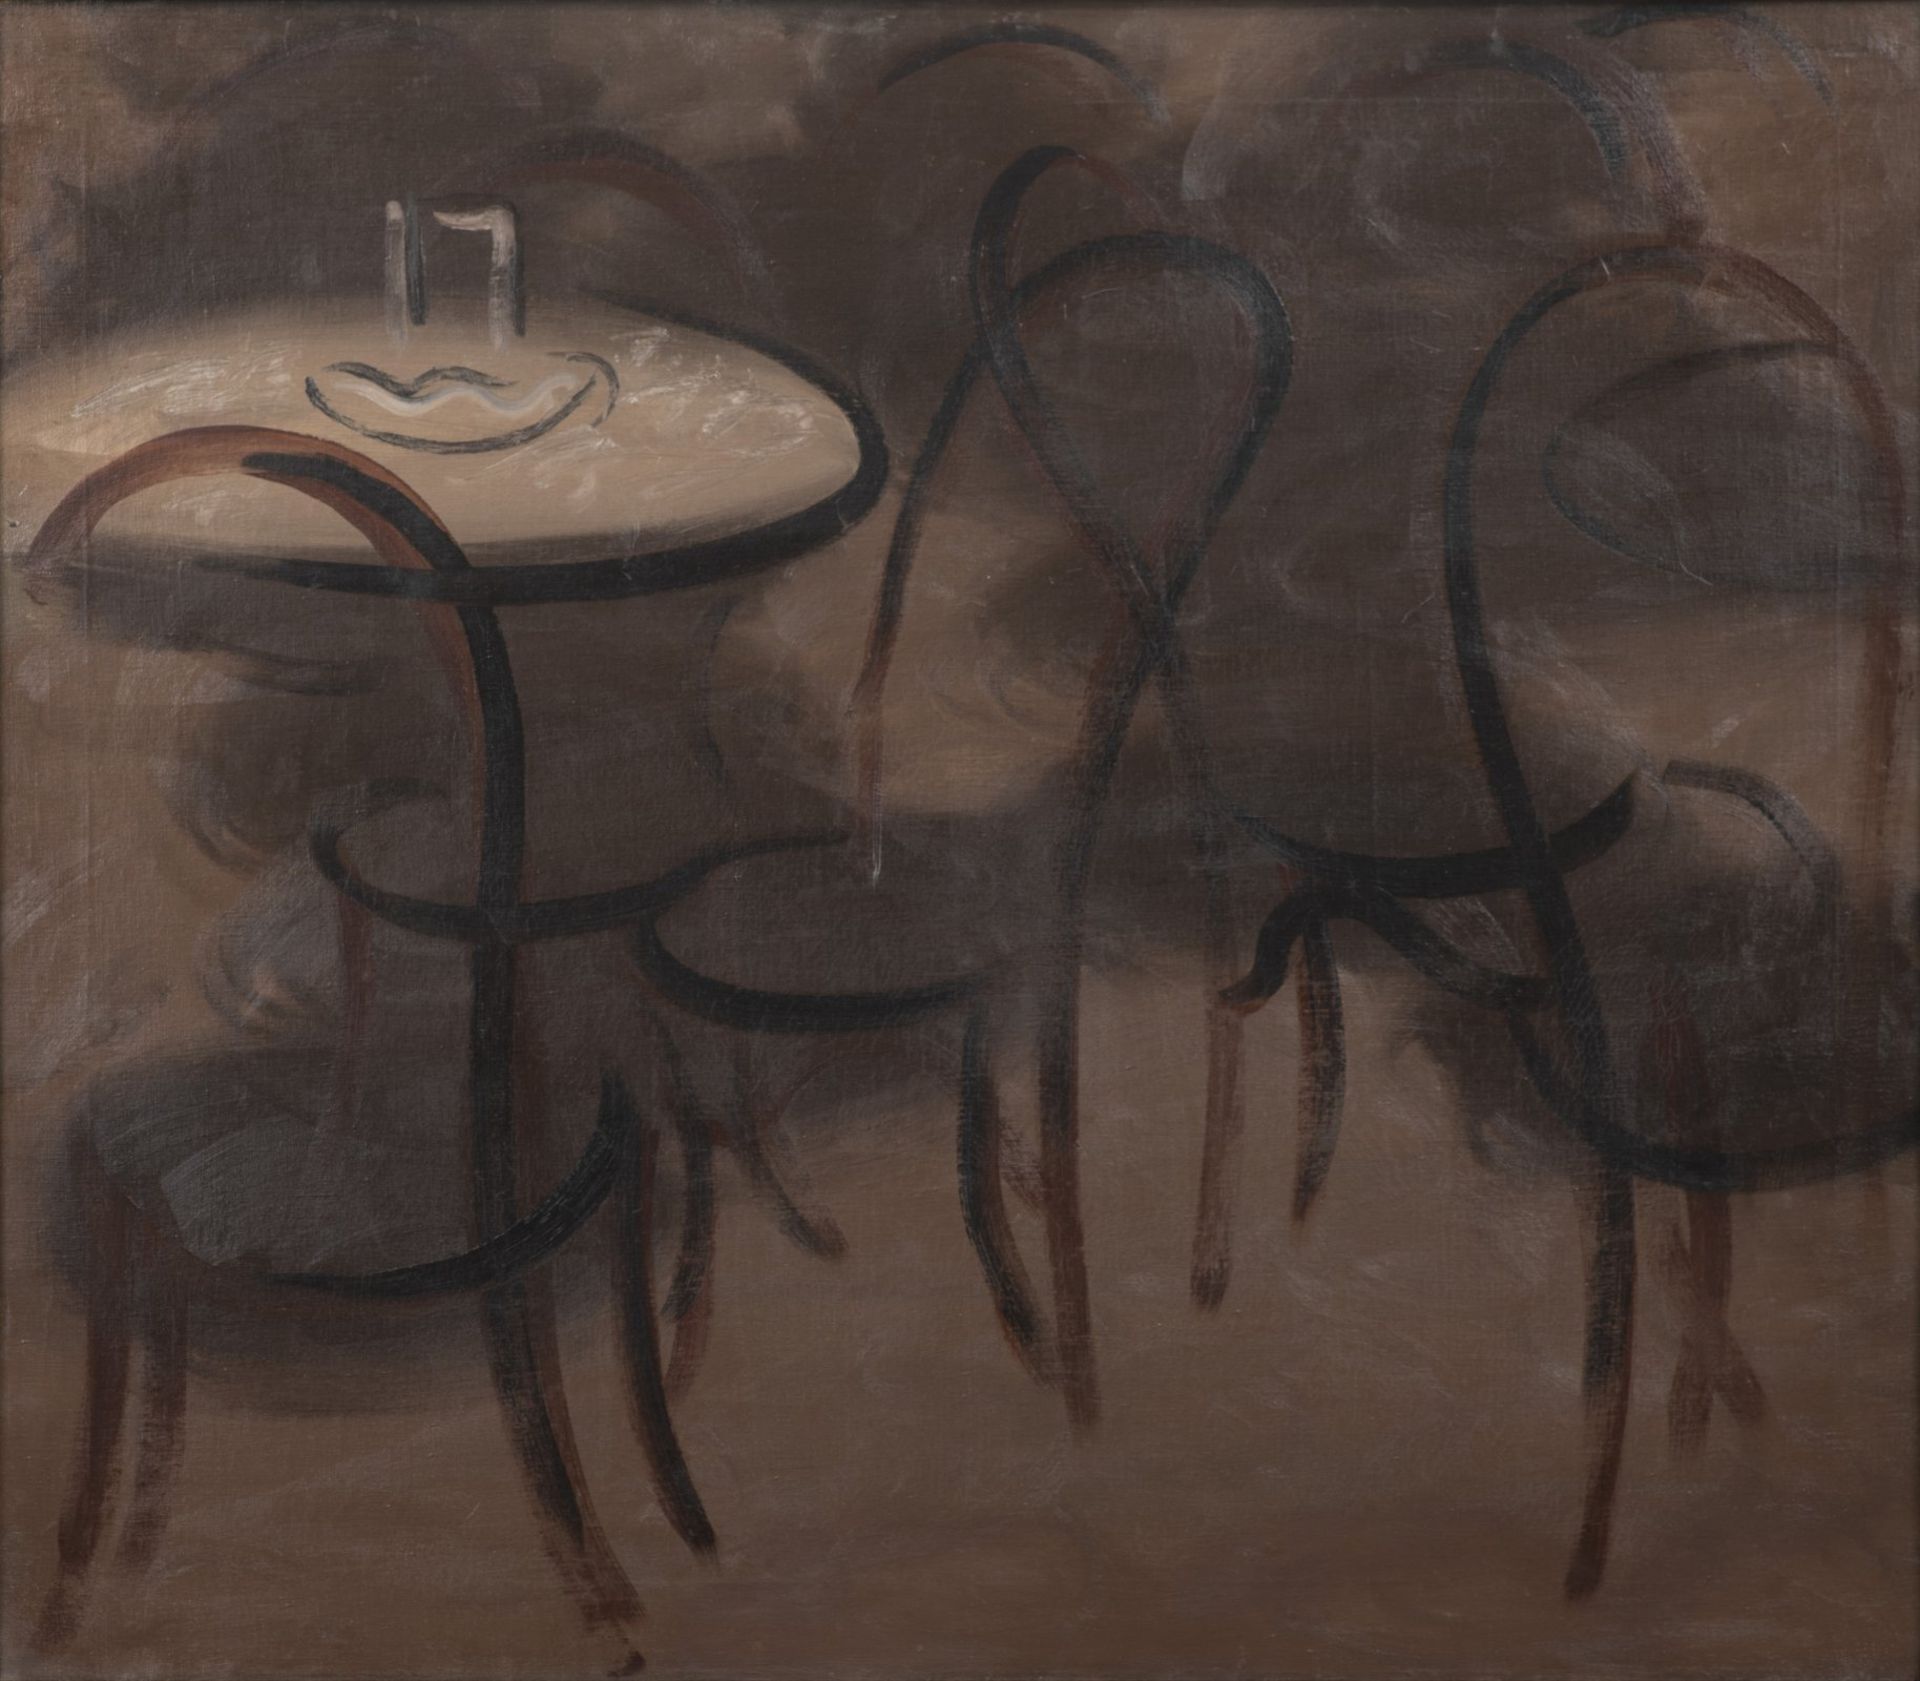 ZDENĚK RYKR 1900 - 1940: A CAFE 1930 Oil on canvas 84 x 95 cm Signed: Upper right "Rykr 30" Zdeněk